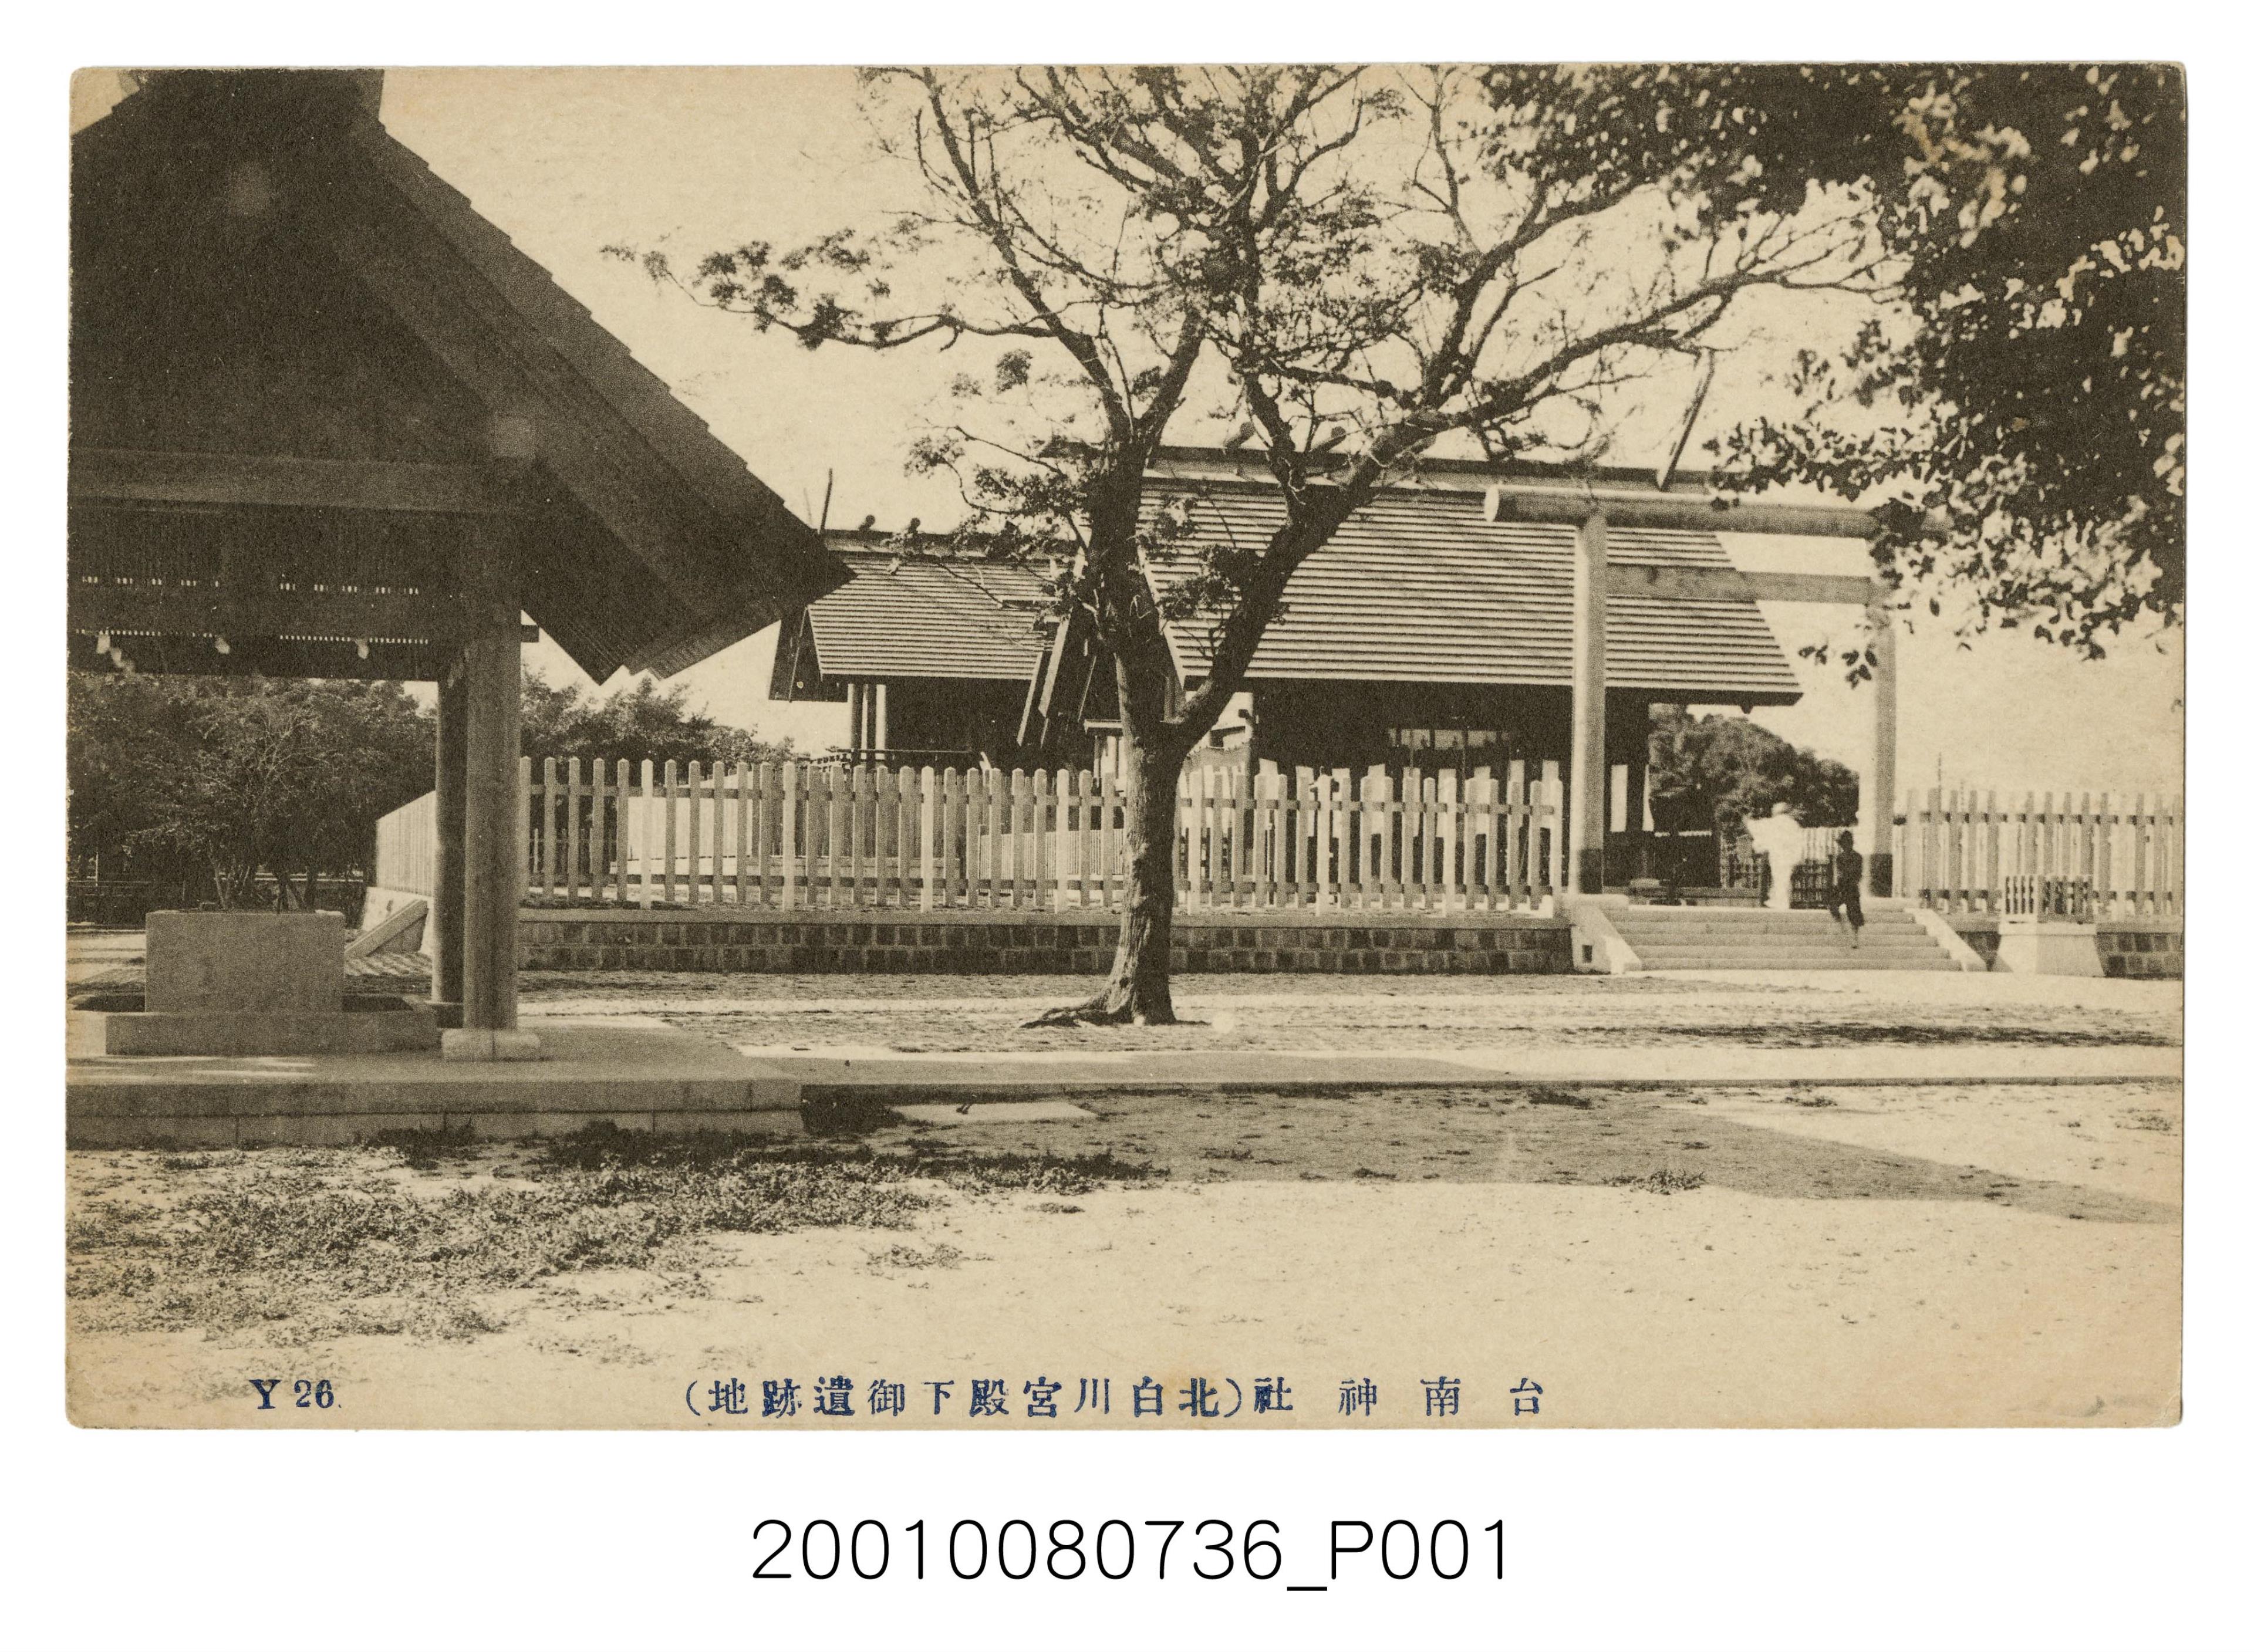 臺南神社北白川宮殿下遺跡地 (共2張)